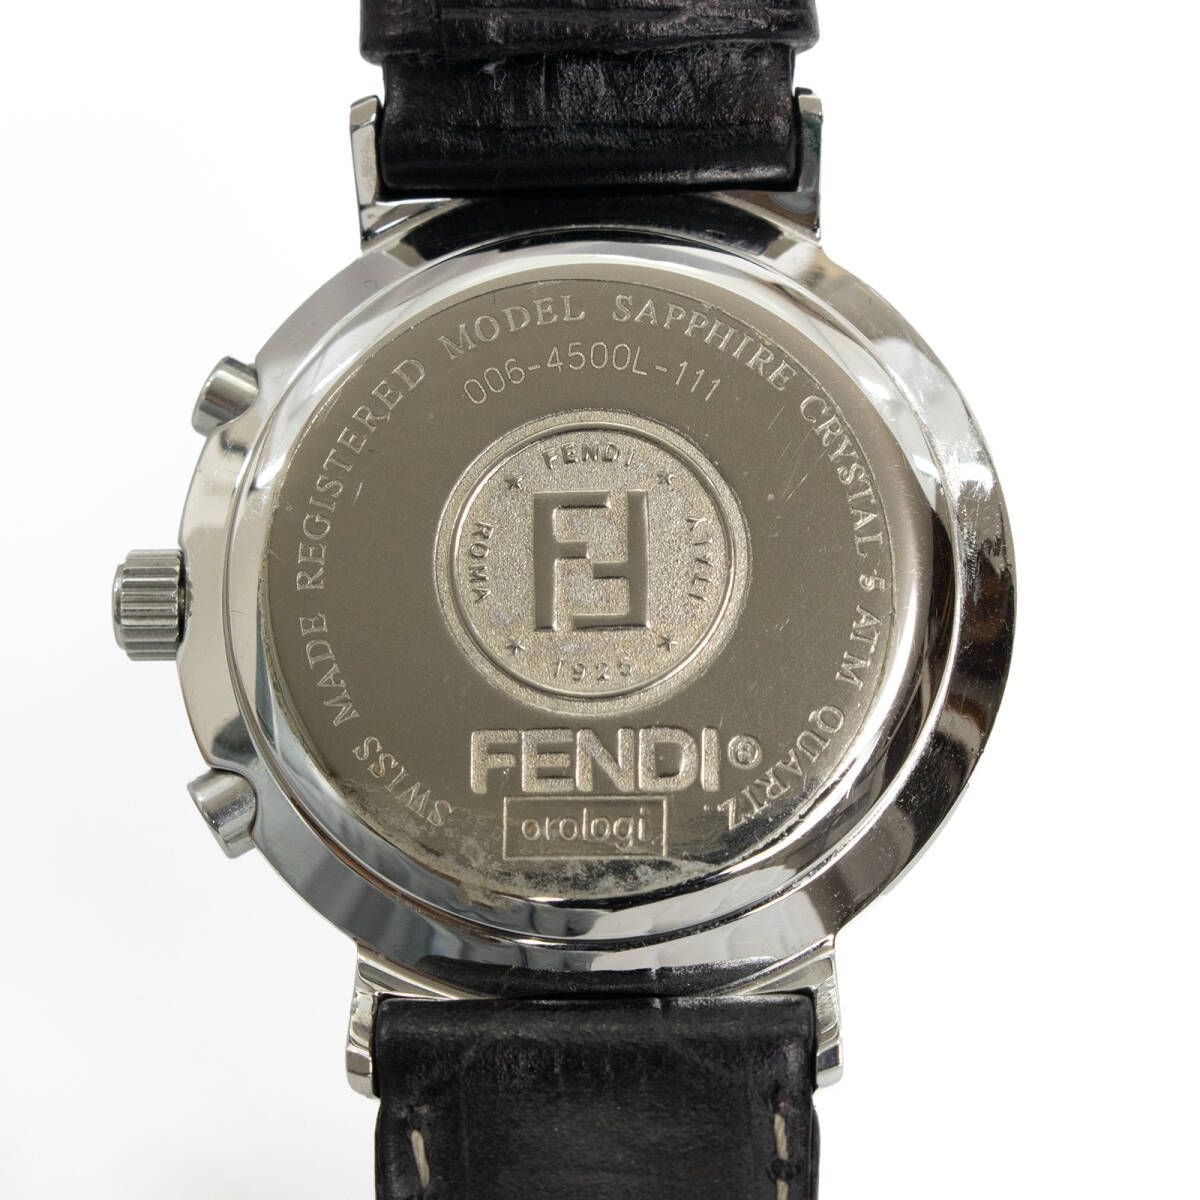 FENDI フェンディ 腕時計 レディース 4500L クロノグラフ FF柄 ブラック 付属完備 ブラック 防水対応 ズッカ 防水対応 カレンダー機能